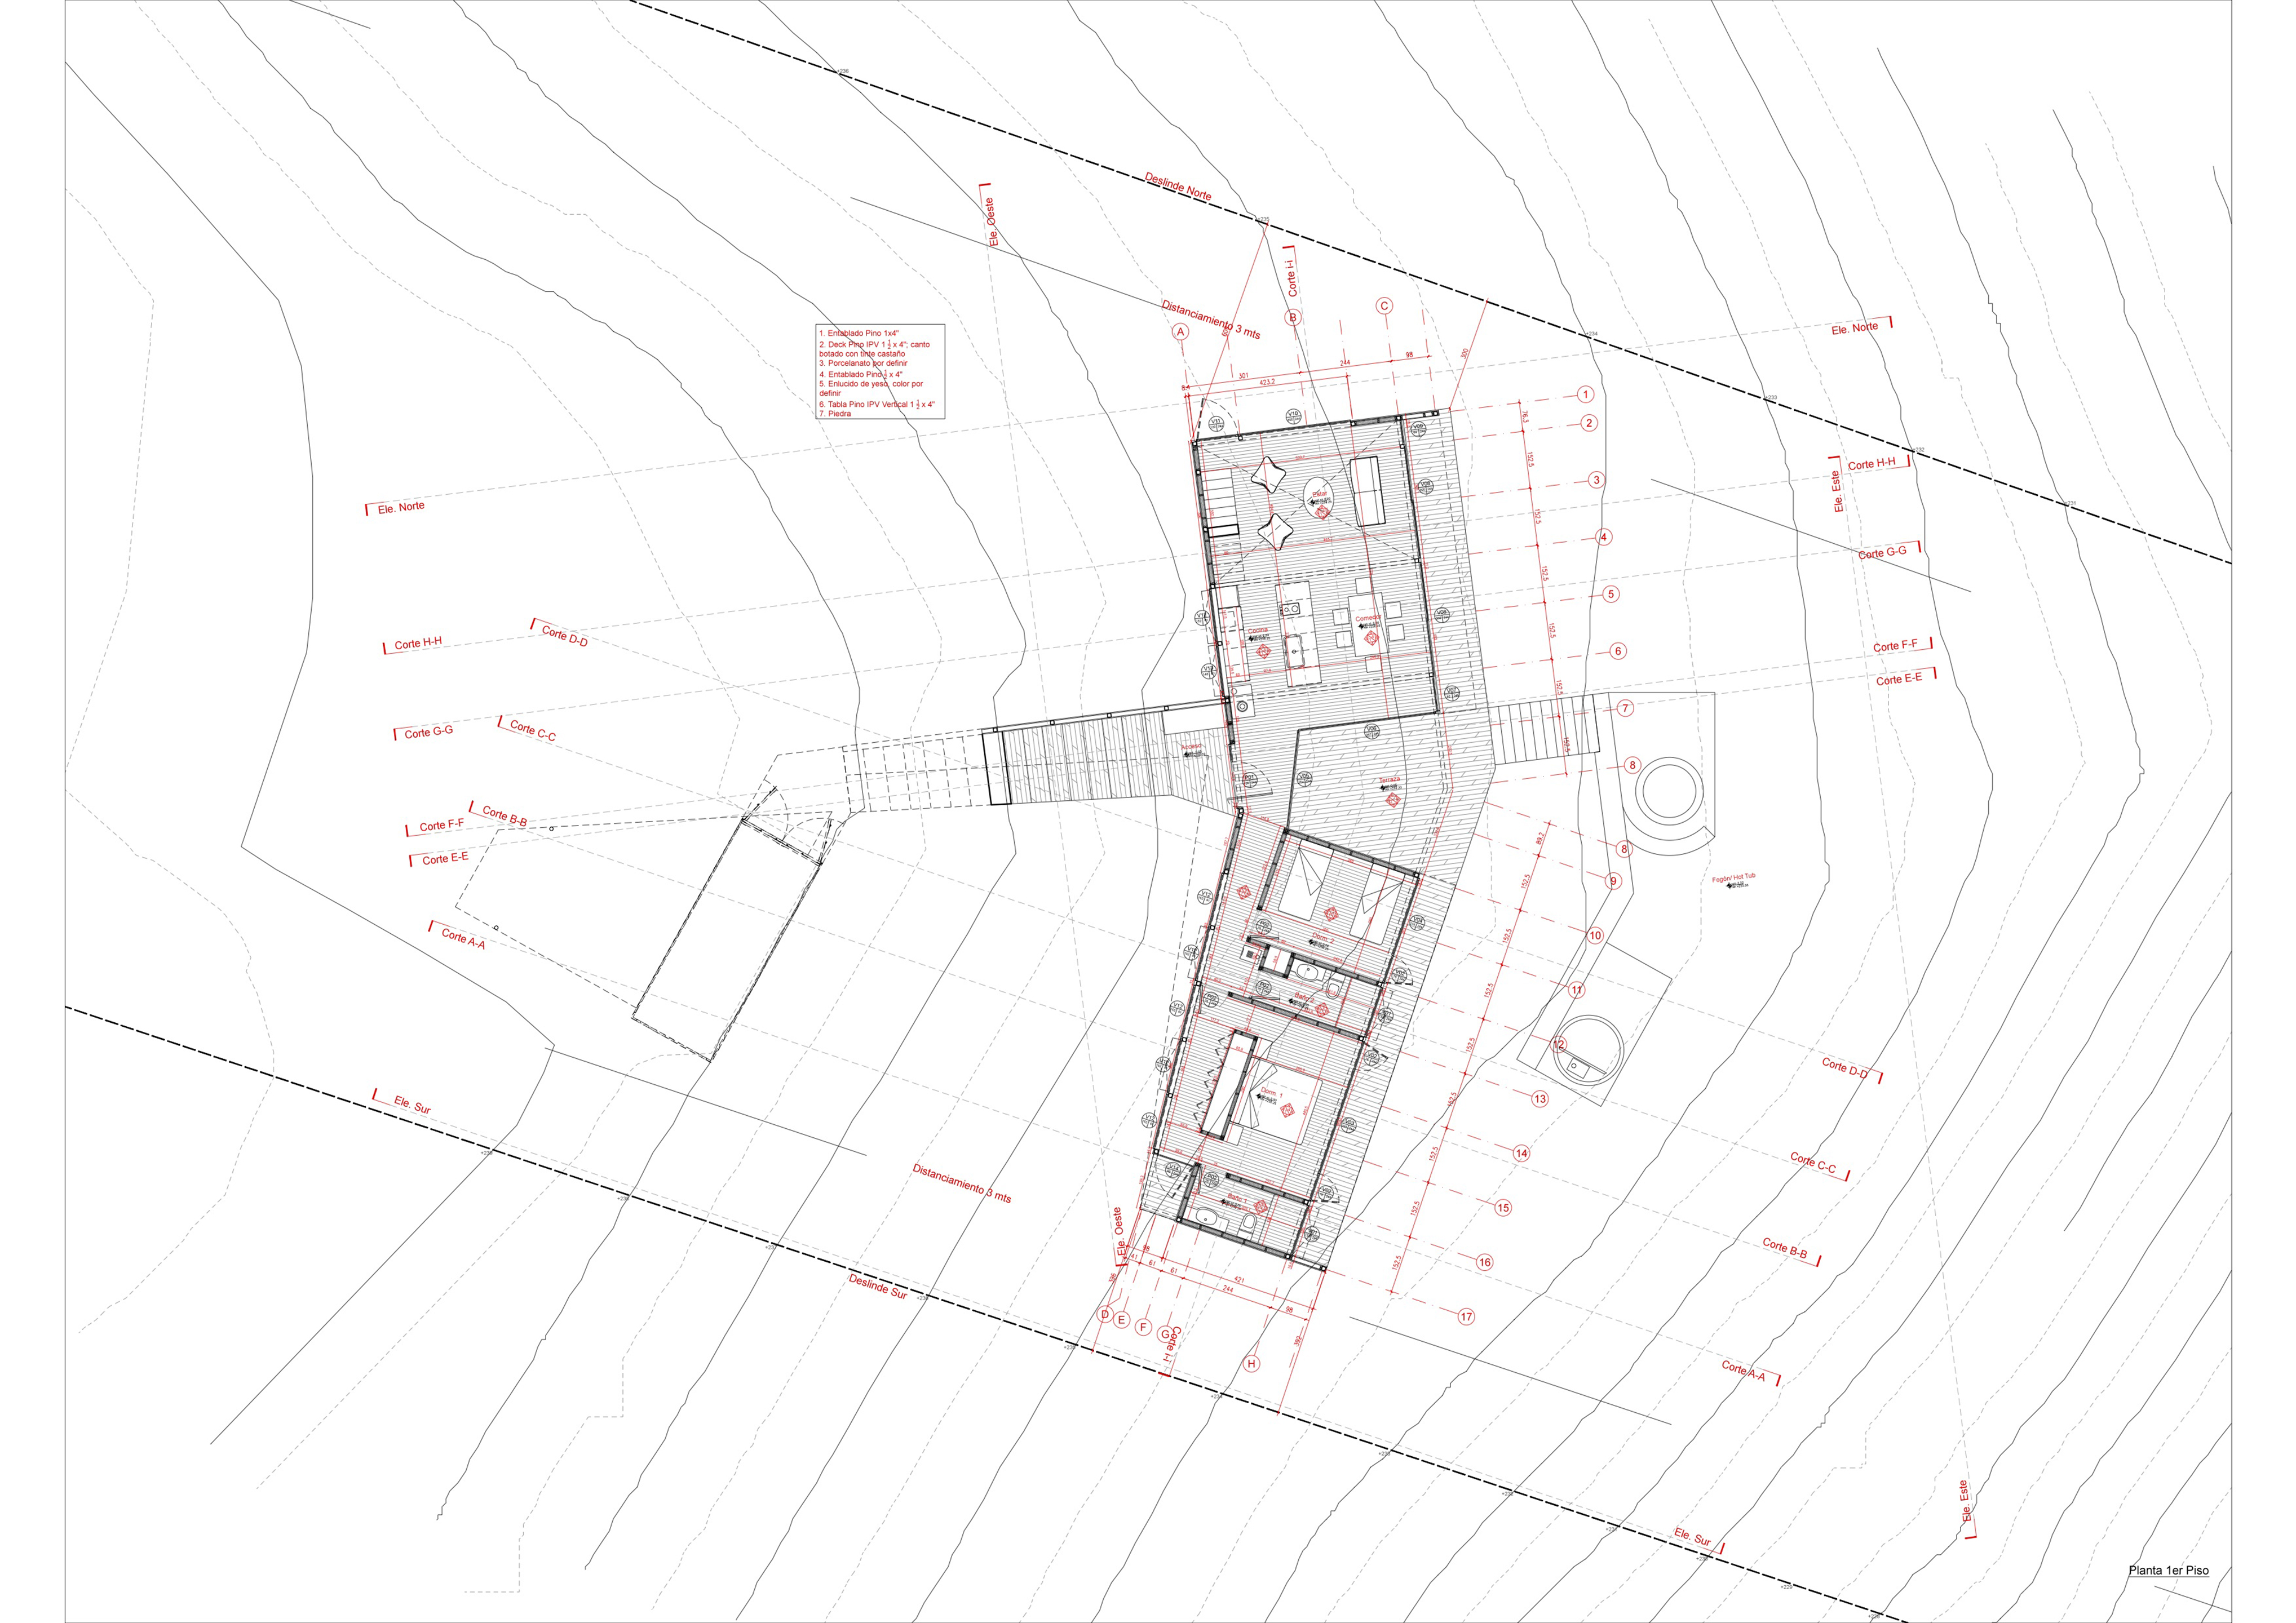 1 Floor Plan, Source by NicolasCRUZarquitectos